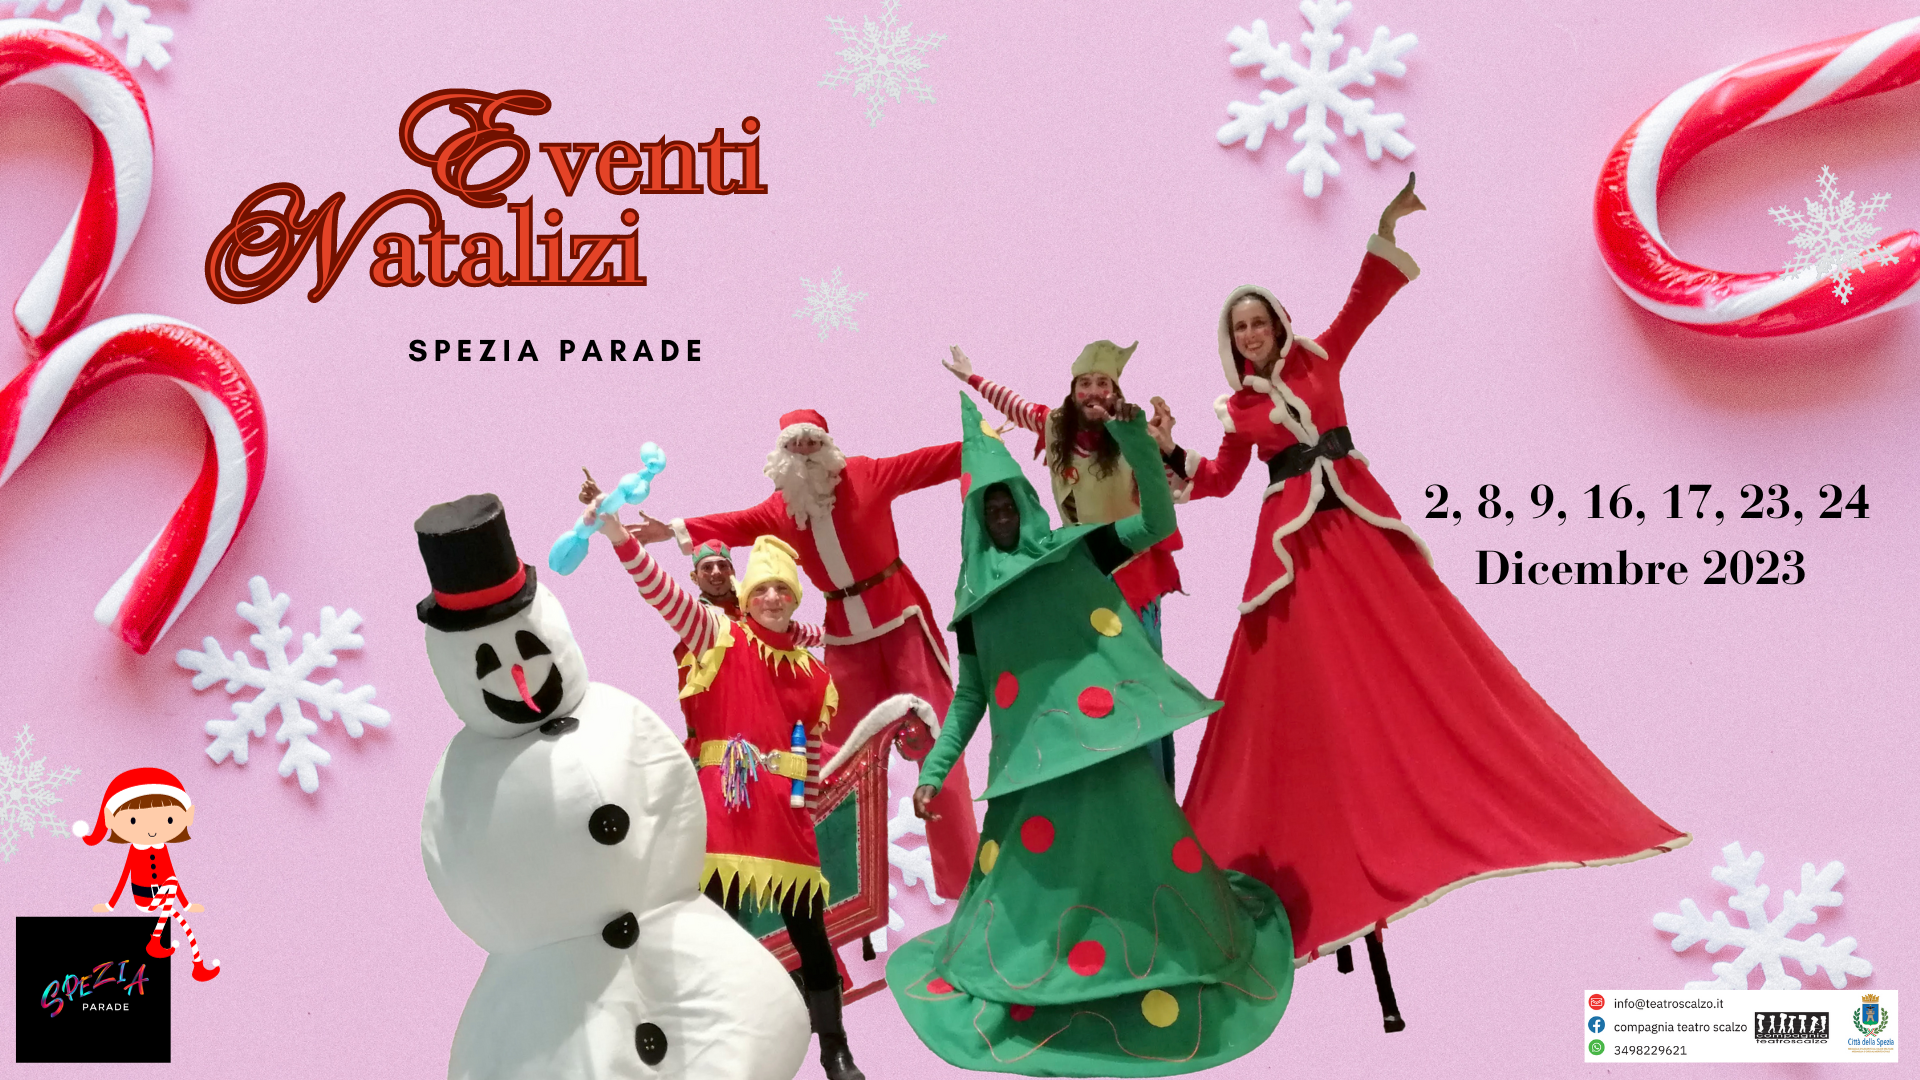 Spezia Parade - Christmas Events